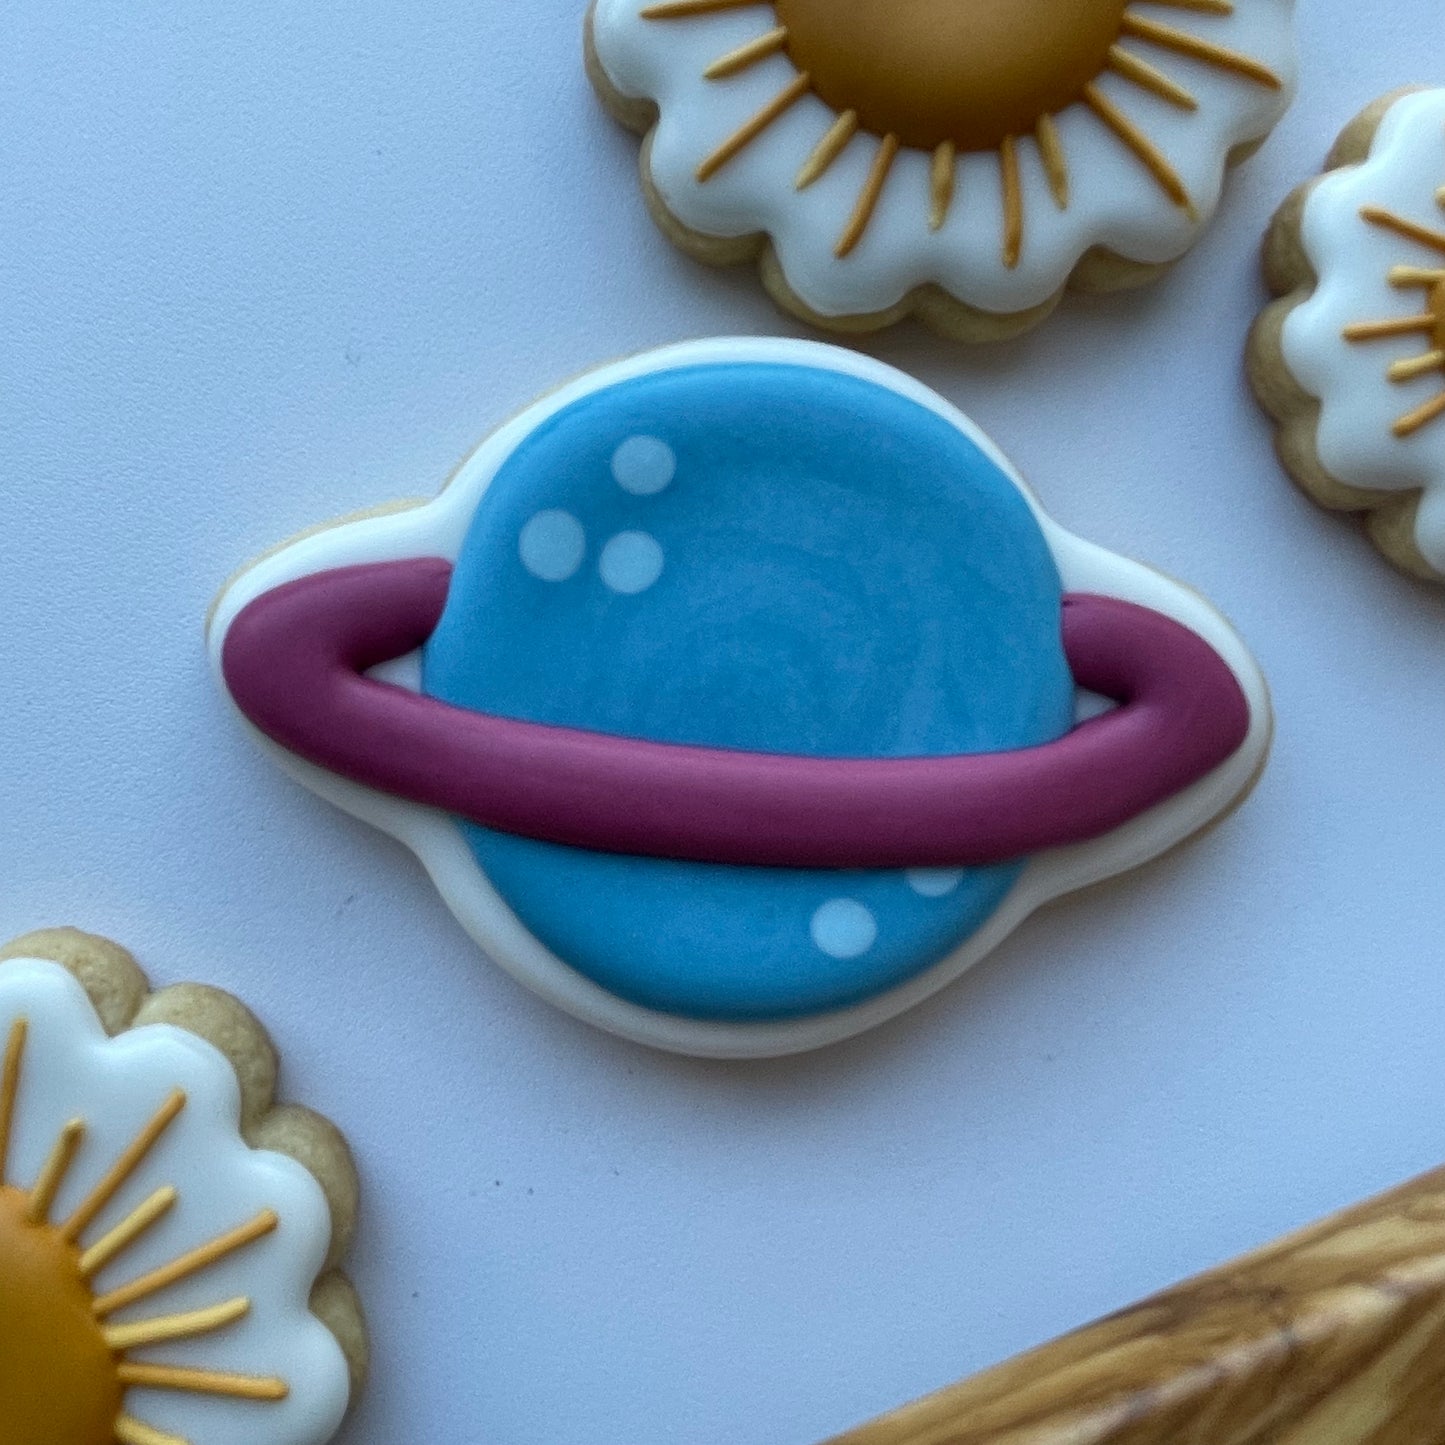 Saturn cookie cutter